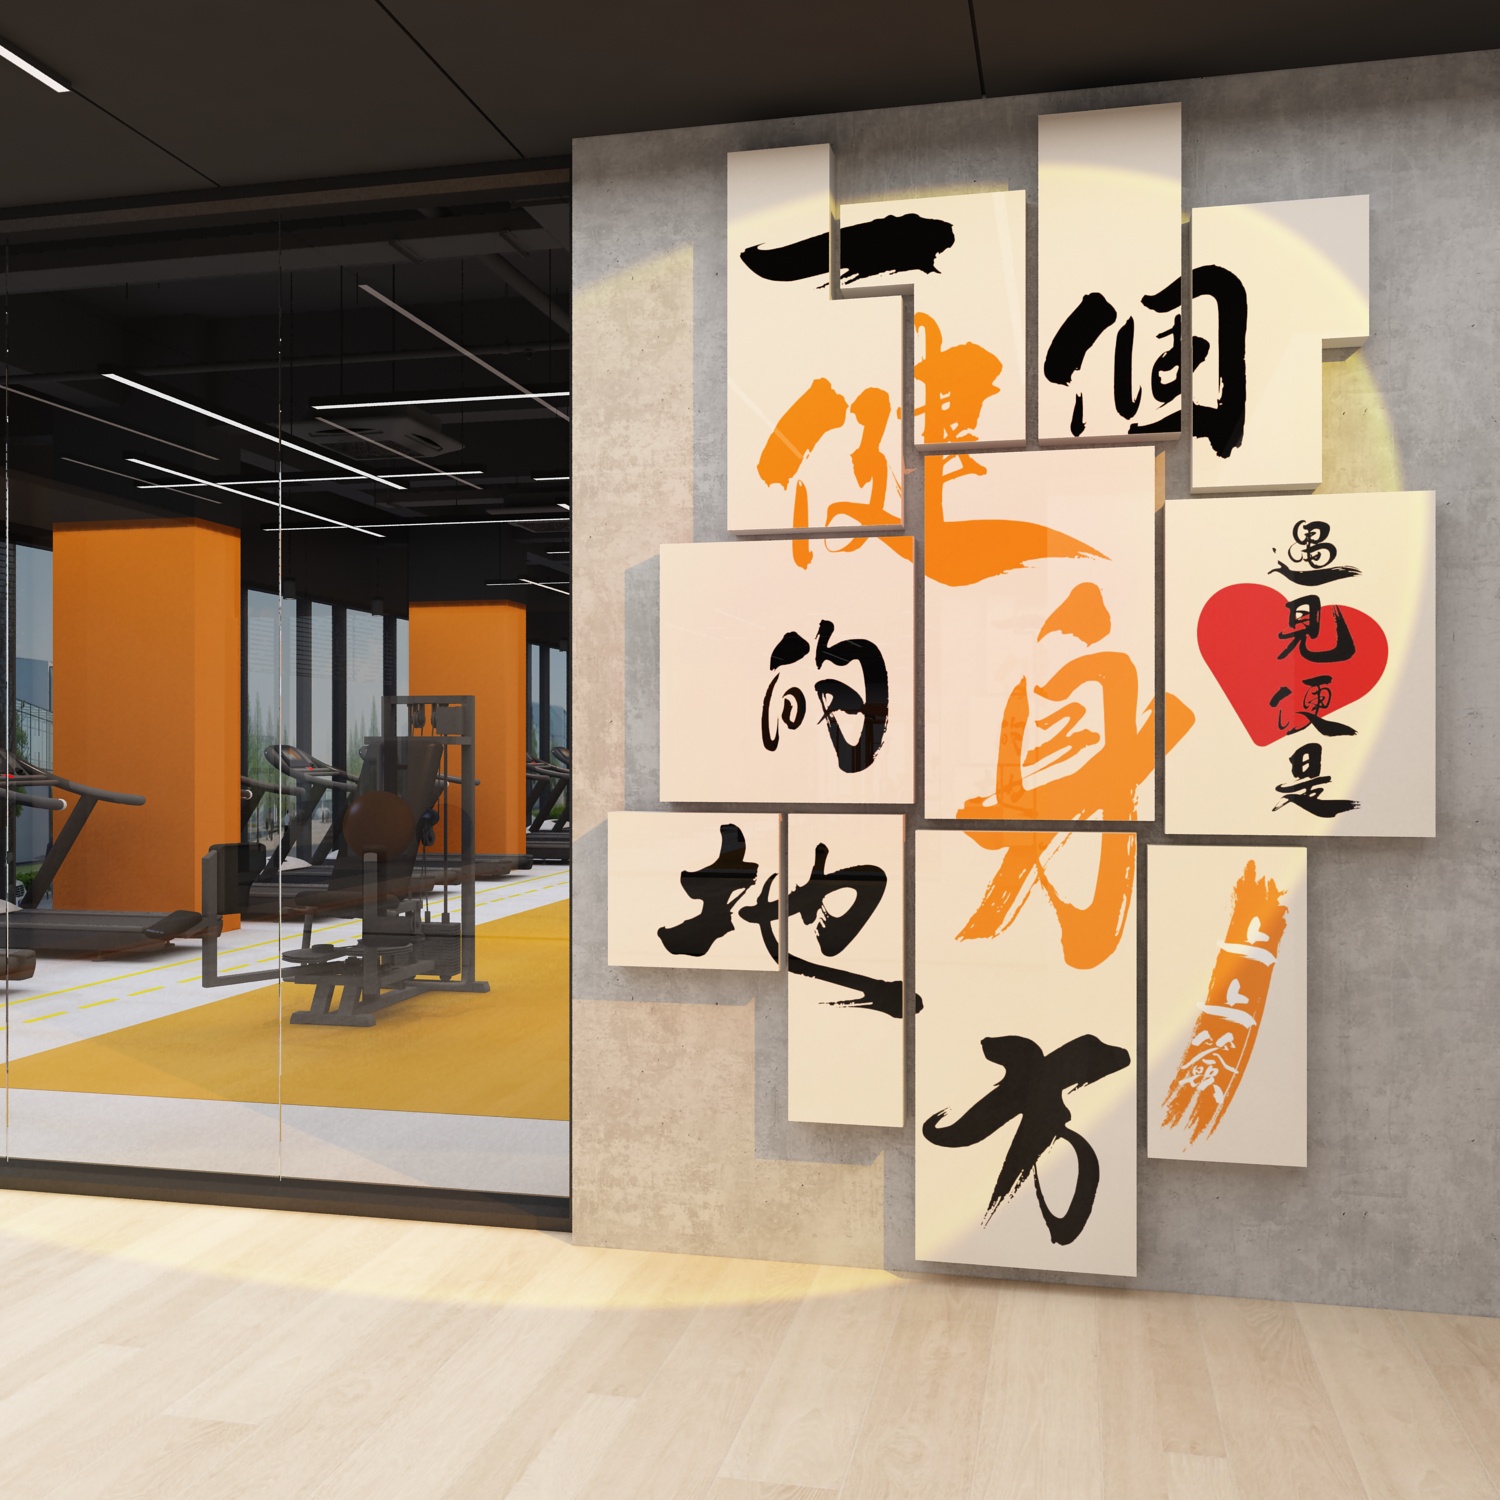 健身房背景墙面装饰励志运动健美工作室标语壁纸挂画海报网红打卡